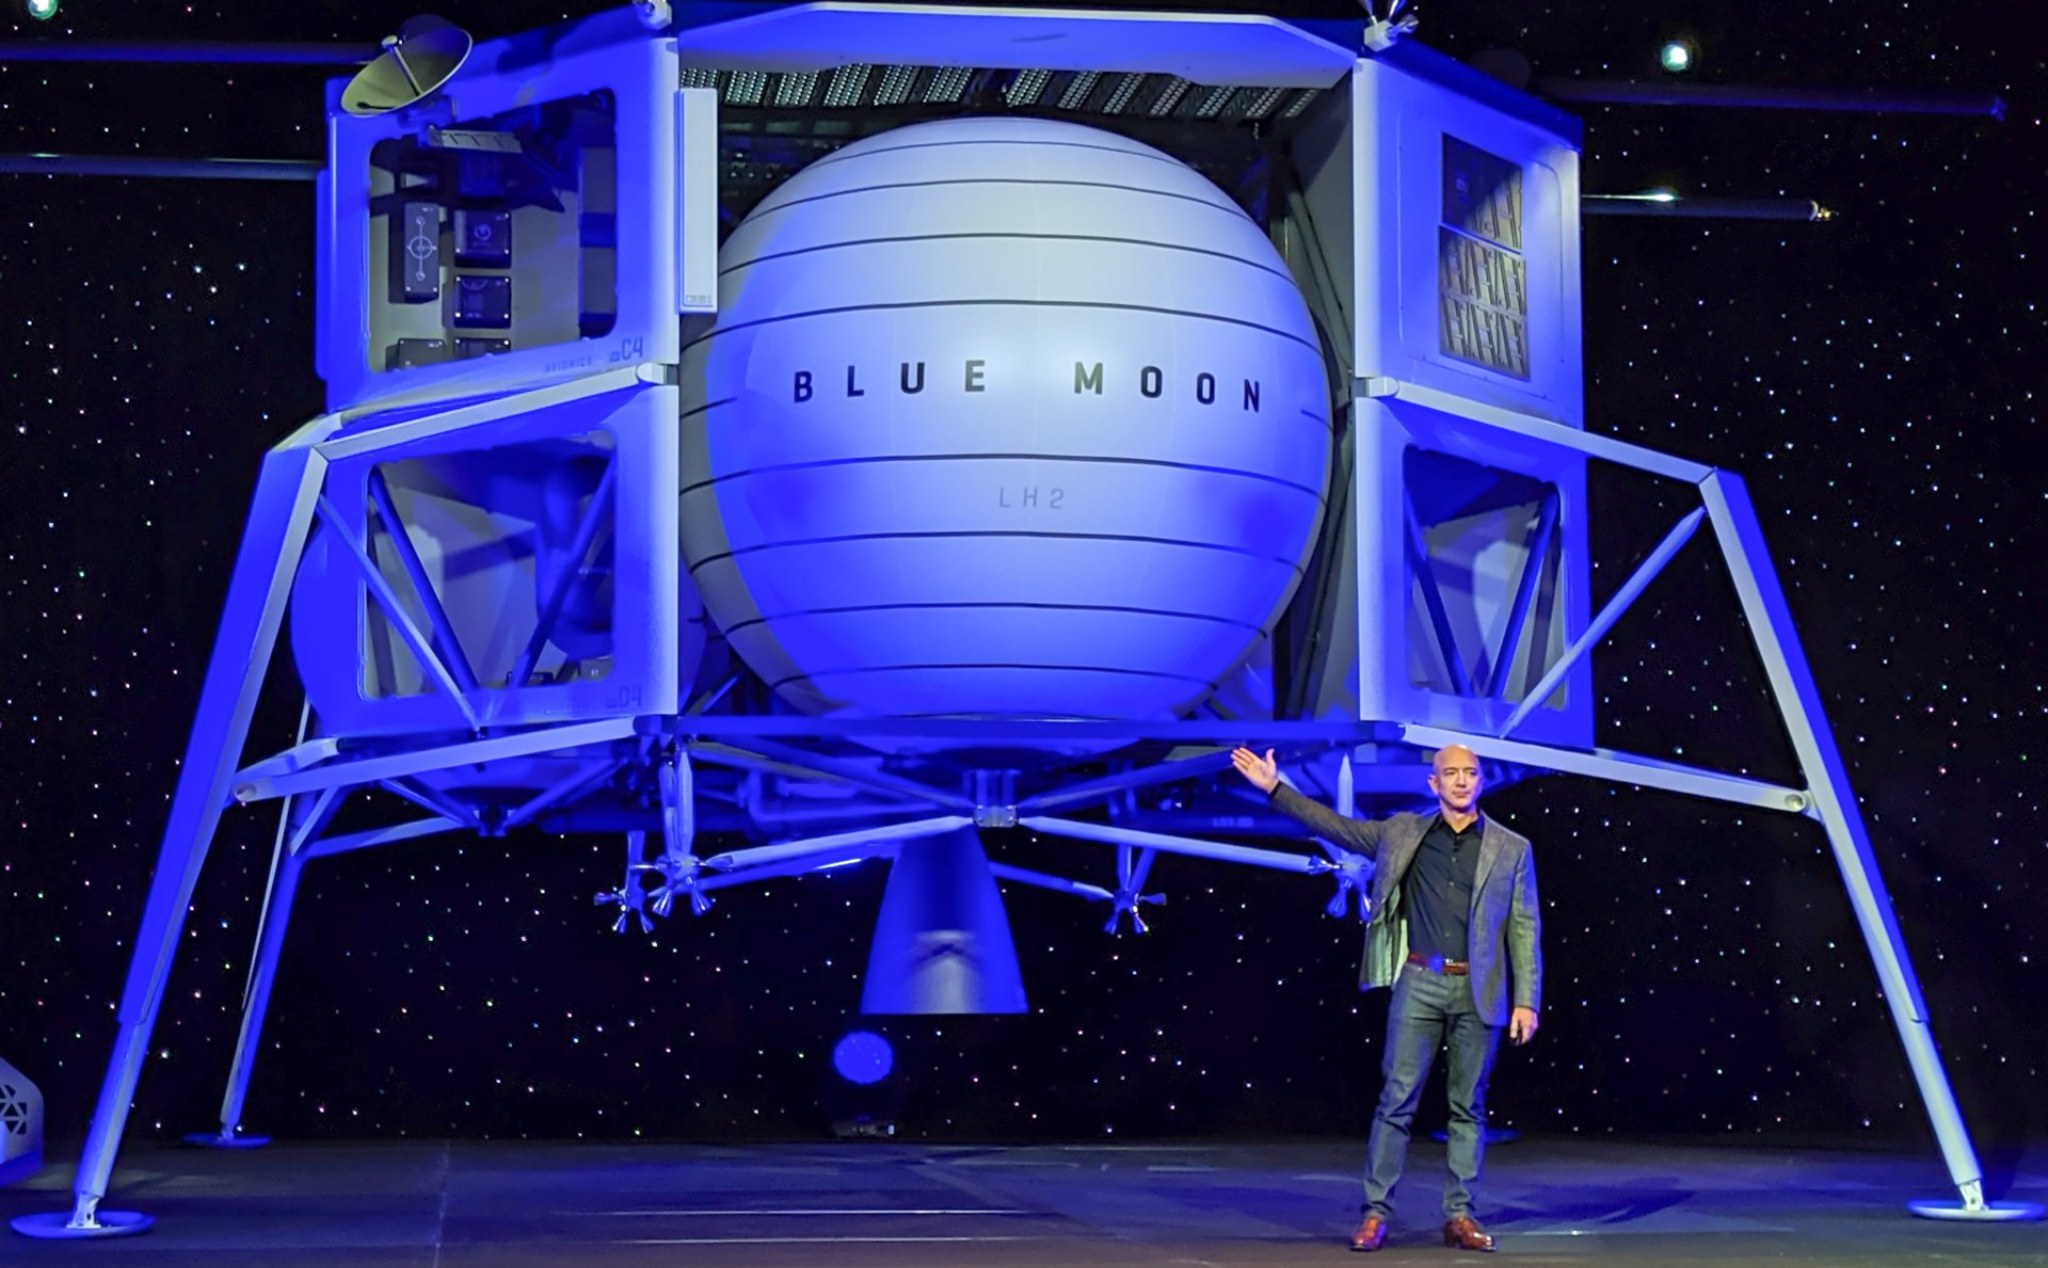 Jeff Bezos giới thiệu tàu vũ trụ Blue Moon giúp loài người có thể ở lâu dài trên Mặt trăng